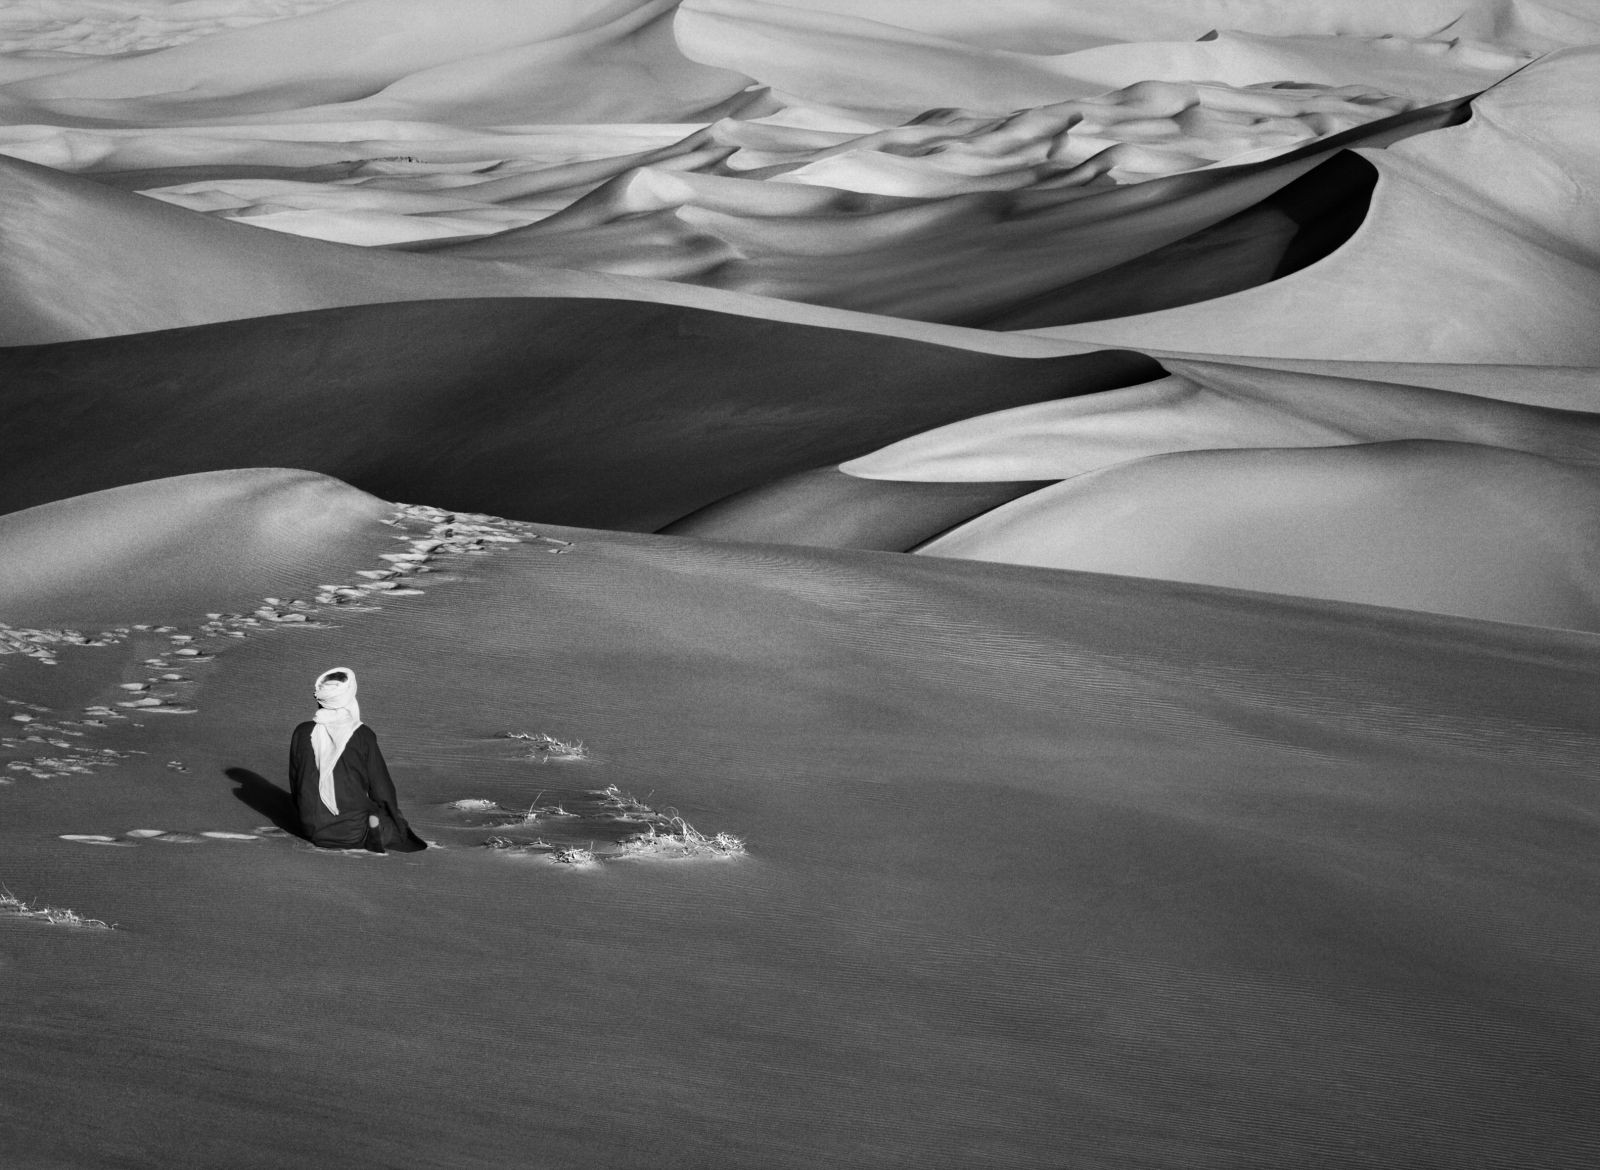 Песчаные дюны, Алжир, 2009. Автор Себастьян Сальгадо